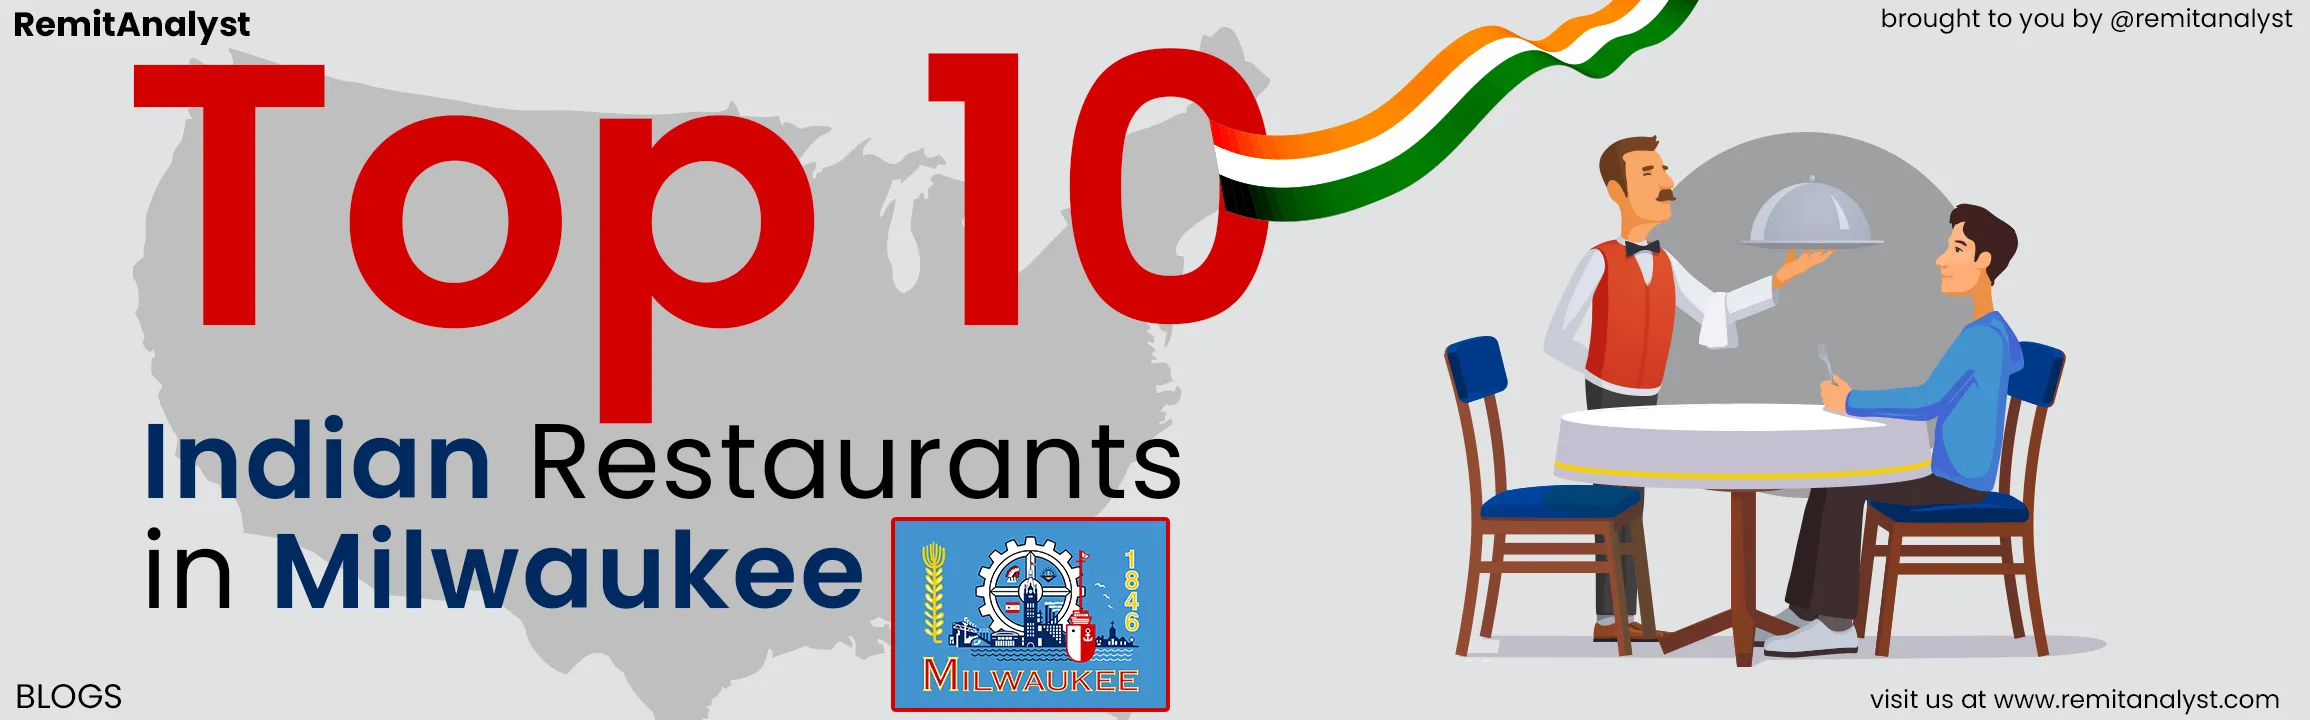 famous-indian-restaurants-milwaukee-title